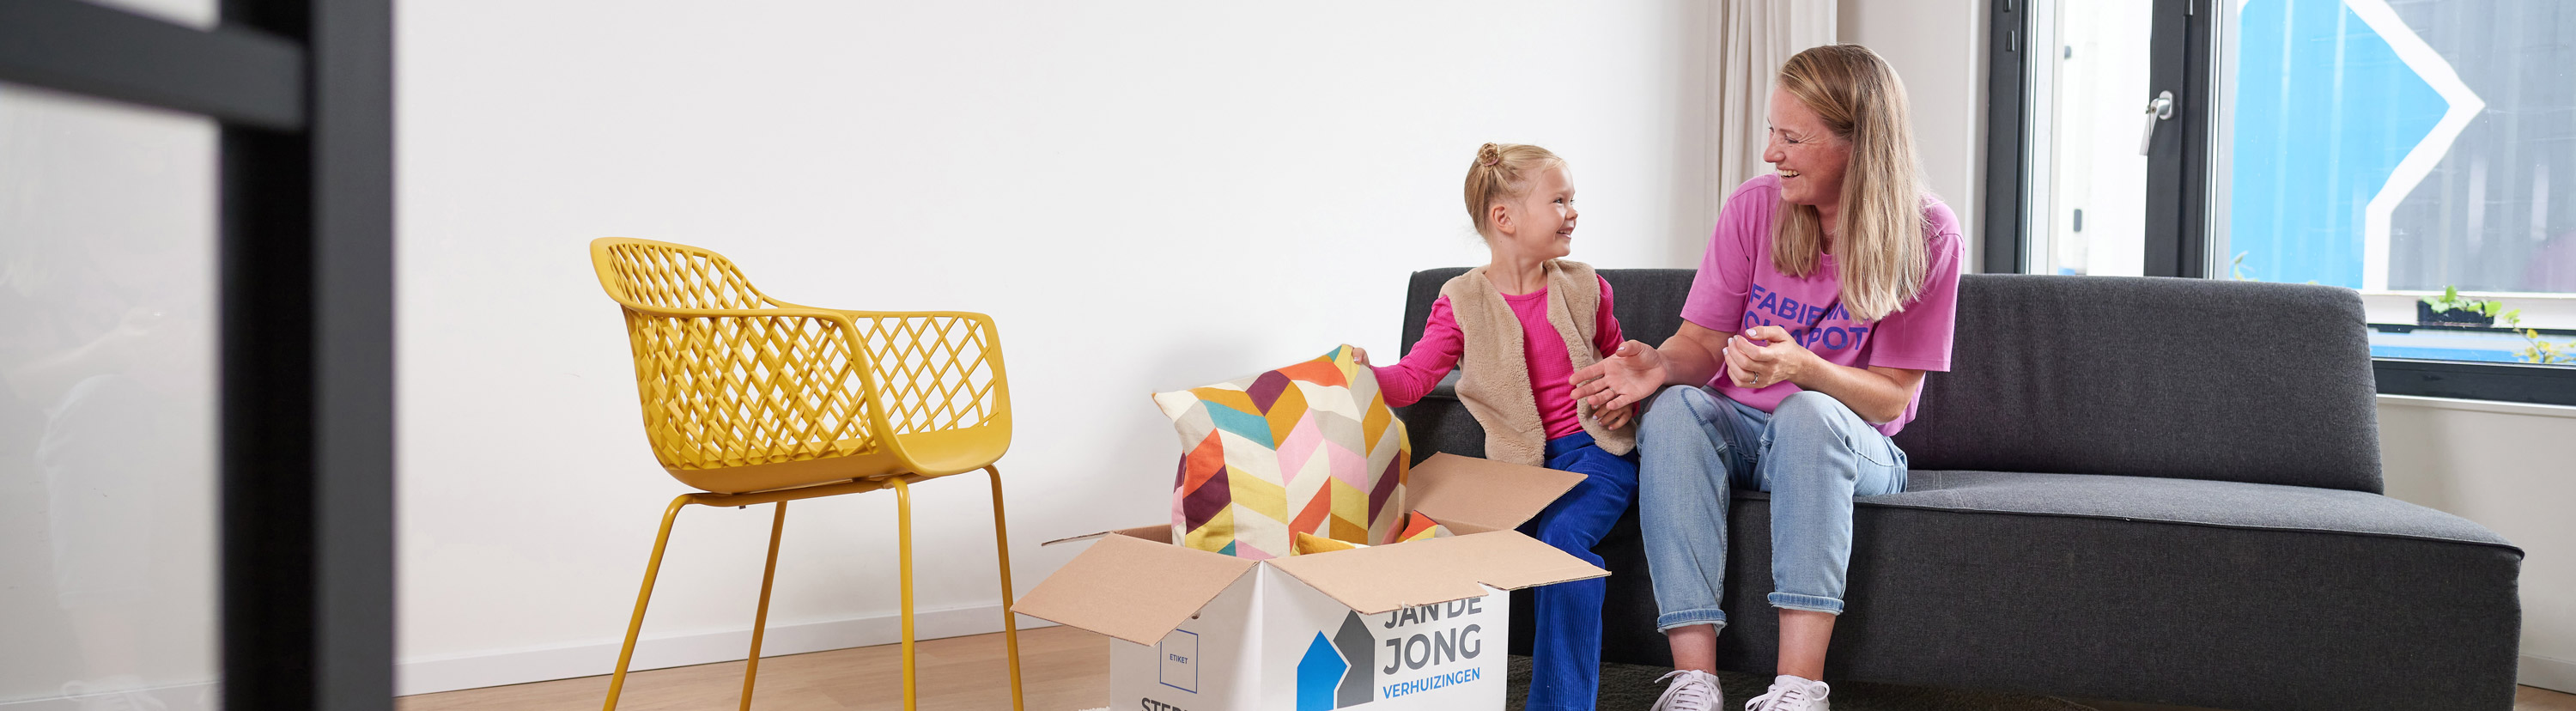 Jan de Jong Movers | moving company in Groningen and Noordhorn